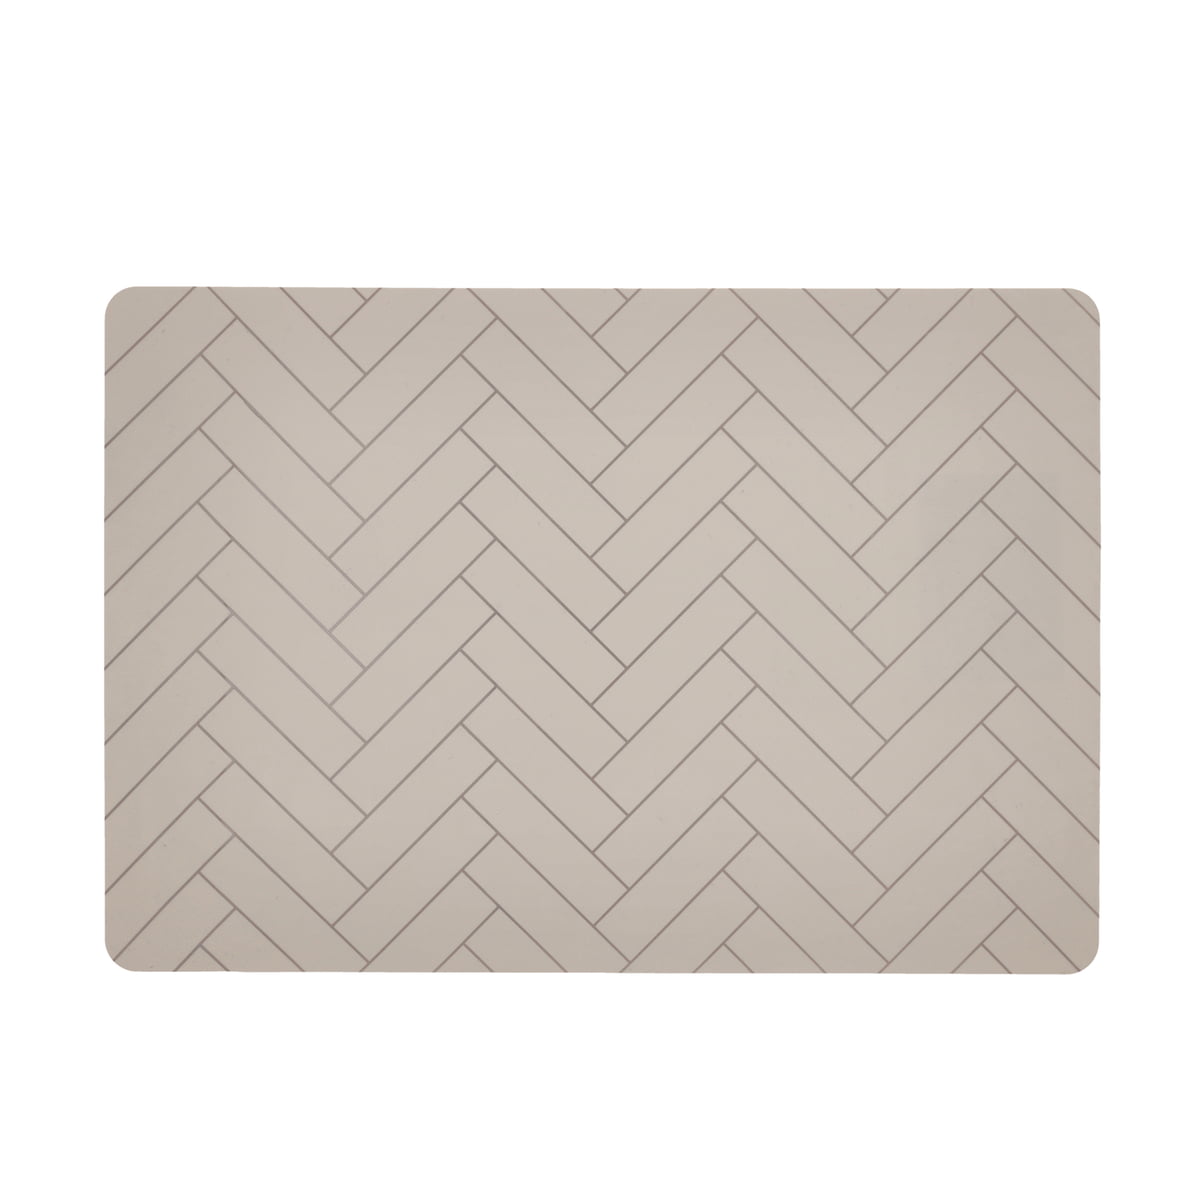 södahl - tiles placemat 33 x 48 cm, beige